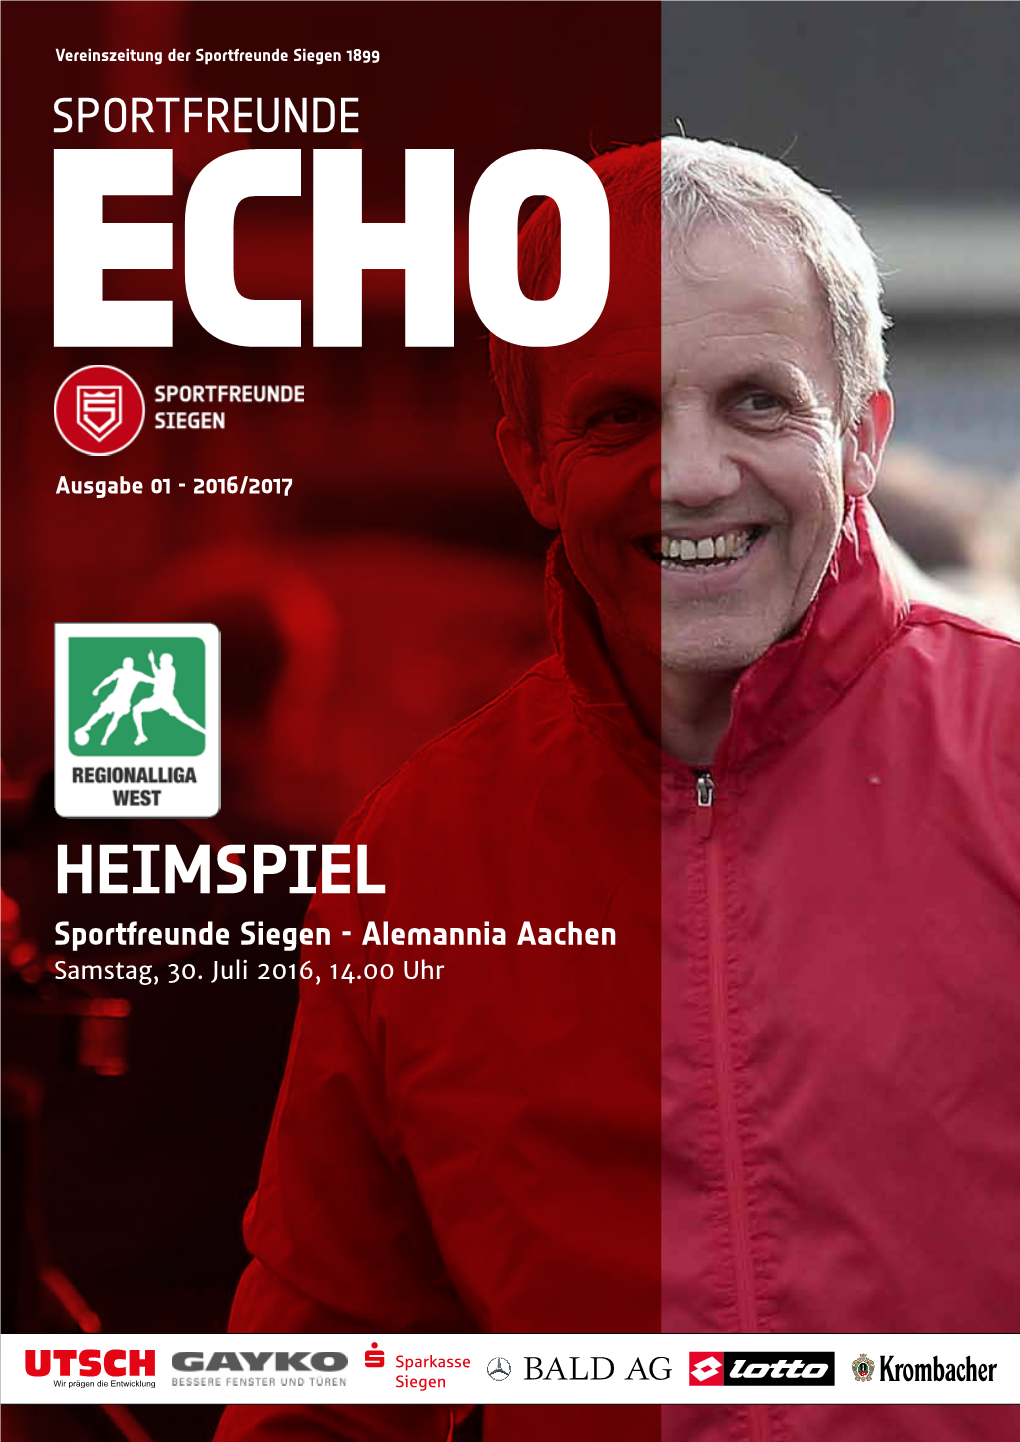 HEIMSPIEL Sportfreunde Siegen - Alemannia Aachen Samstag, 30